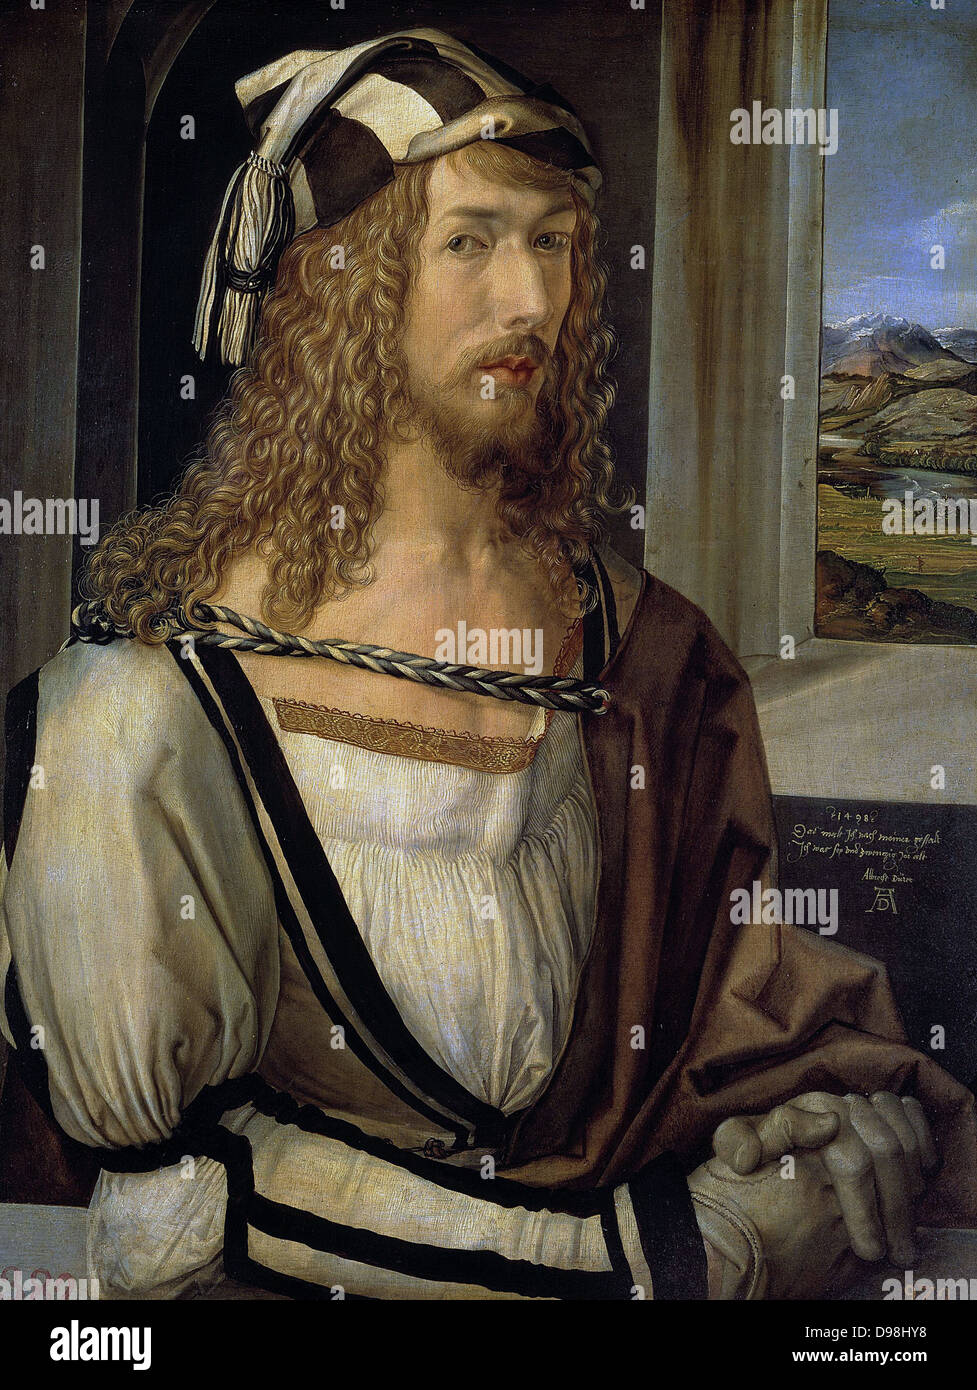 Albrecht Durer, autoritratto con i guanti 'self-ritratto in età di 28'. Albrecht Dürer 1471 - 1528 pittore tedesco, printmaker matematico, incisore, e teorico da Norimberga. Foto Stock